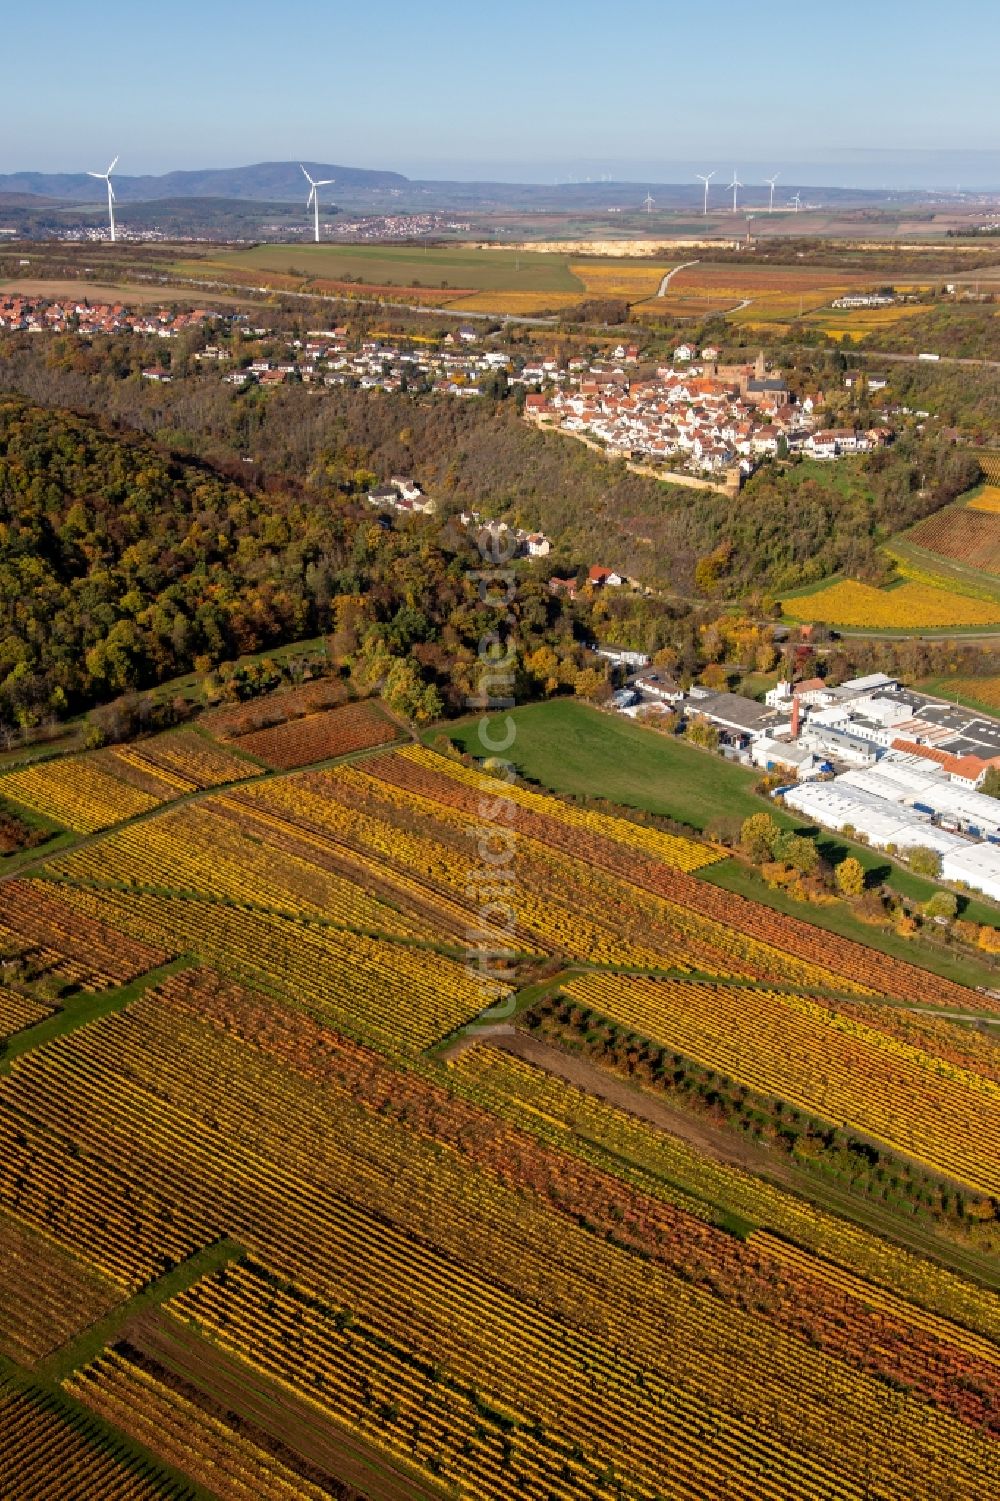 Luftbild Neuleiningen - Herbstluftbild Ortsbereich am Weinbaugebiet oberhalb der Produktionshallen der Gechem GmbH & Co. KG in Neuleiningen im Bundesland Rheinland-Pfalz, Deutschland